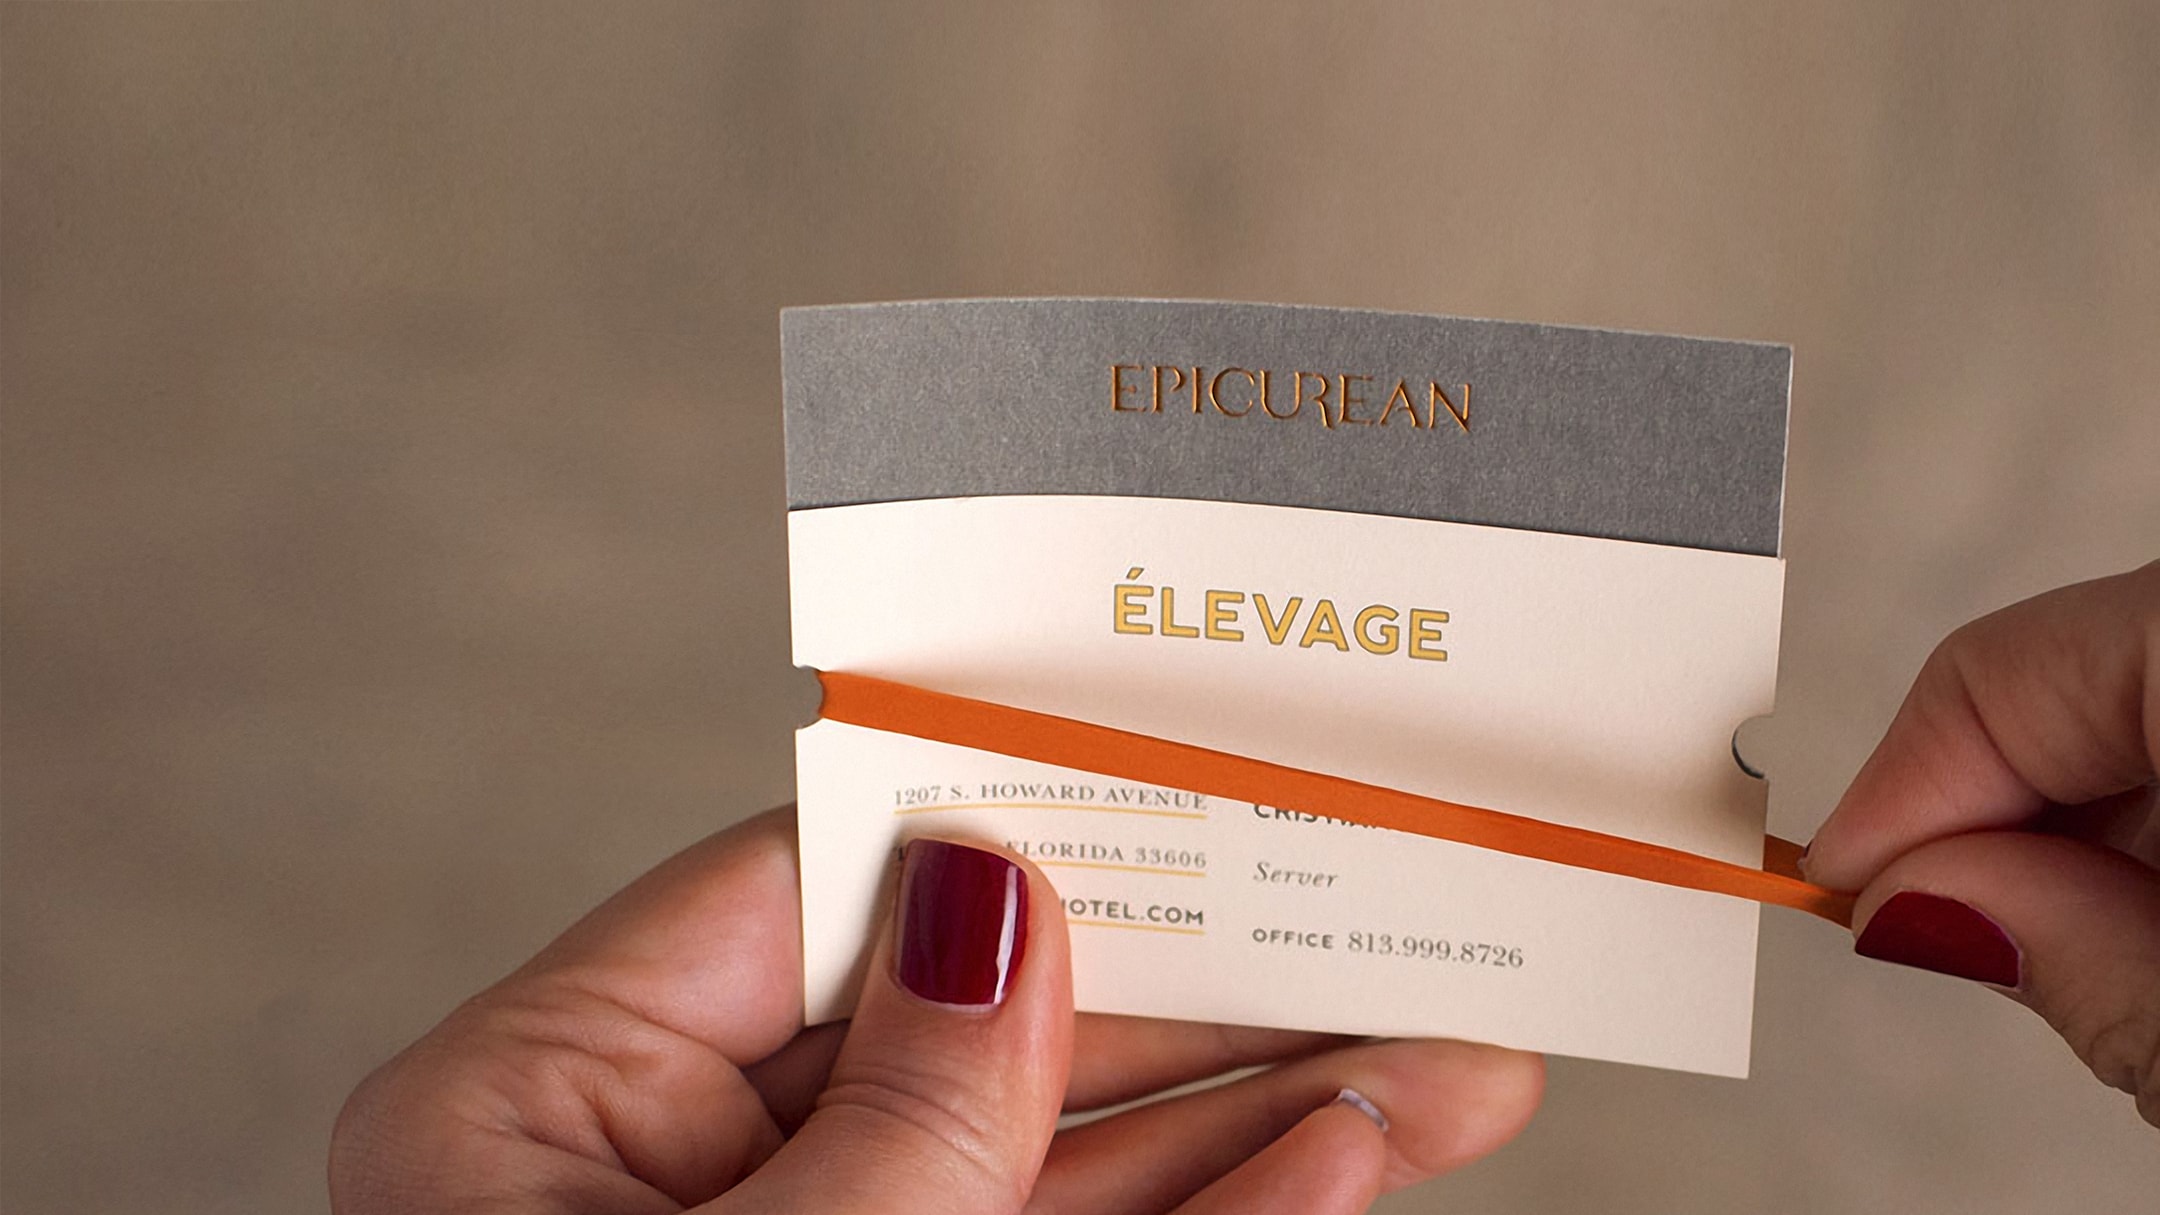 Epicurean Hotel branded business card